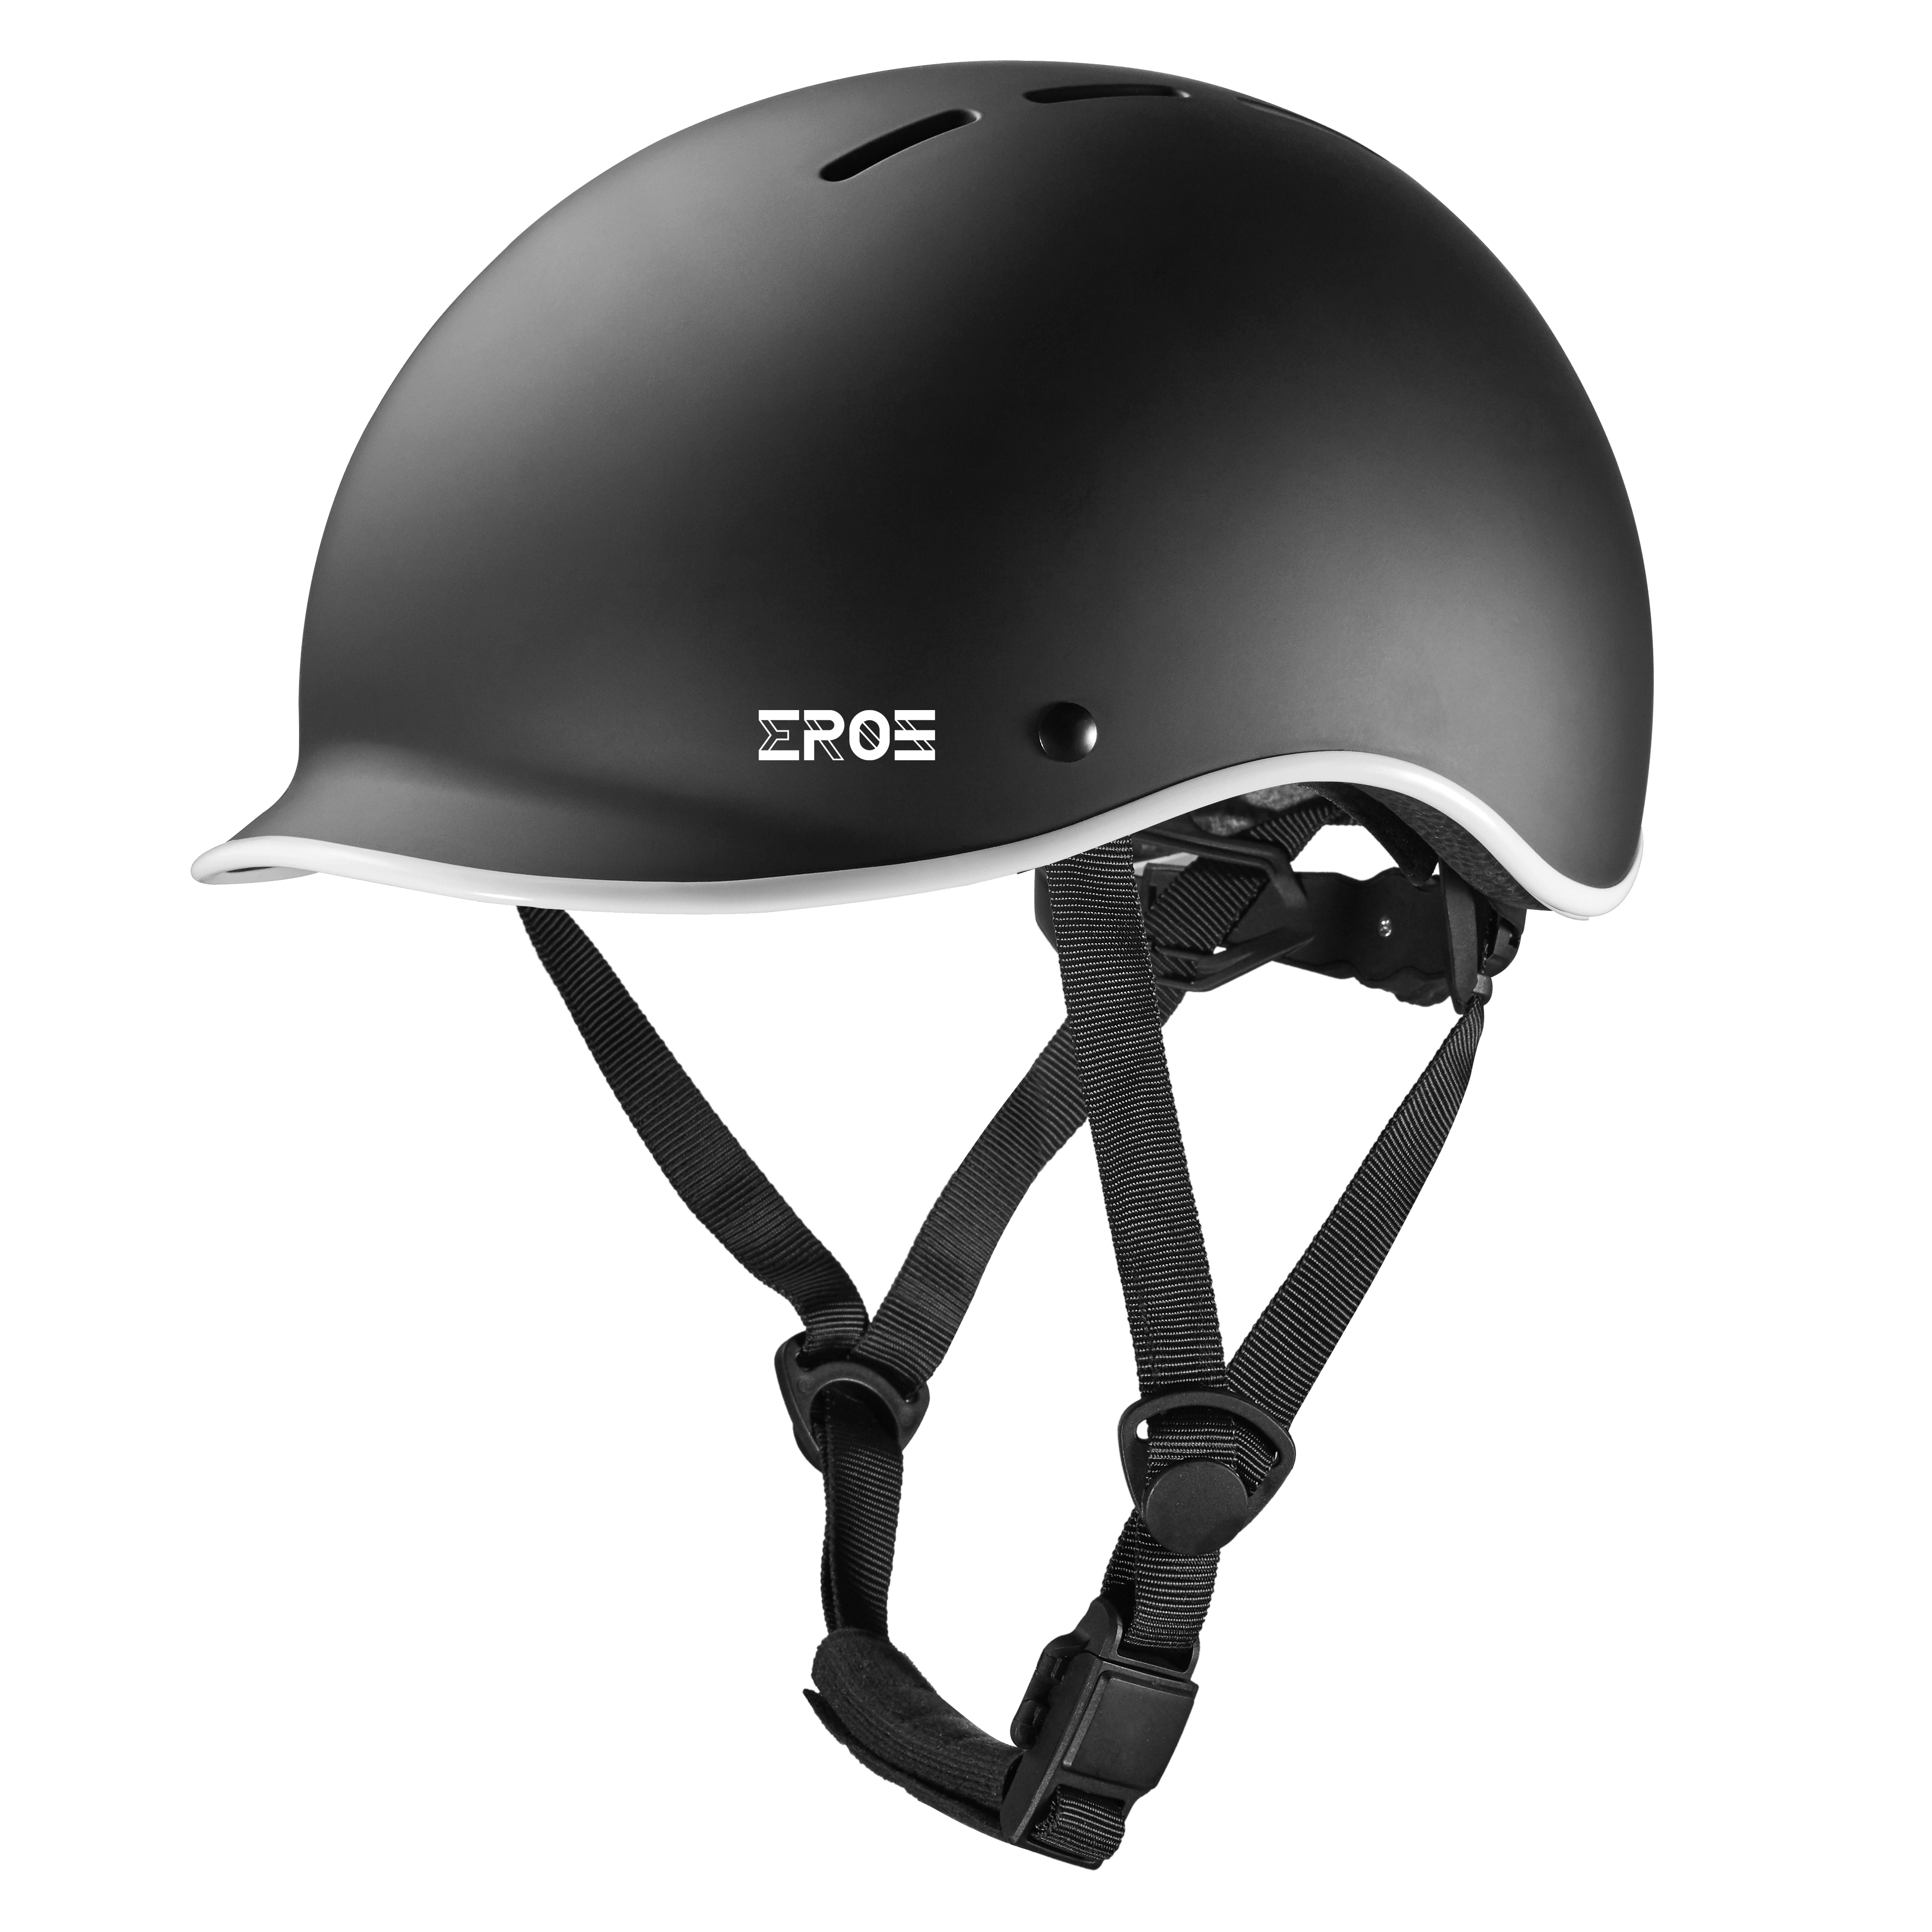 Eroz Vintage Collection Helm für Elektroroller und Fahrrad (Blau/Schwarz)